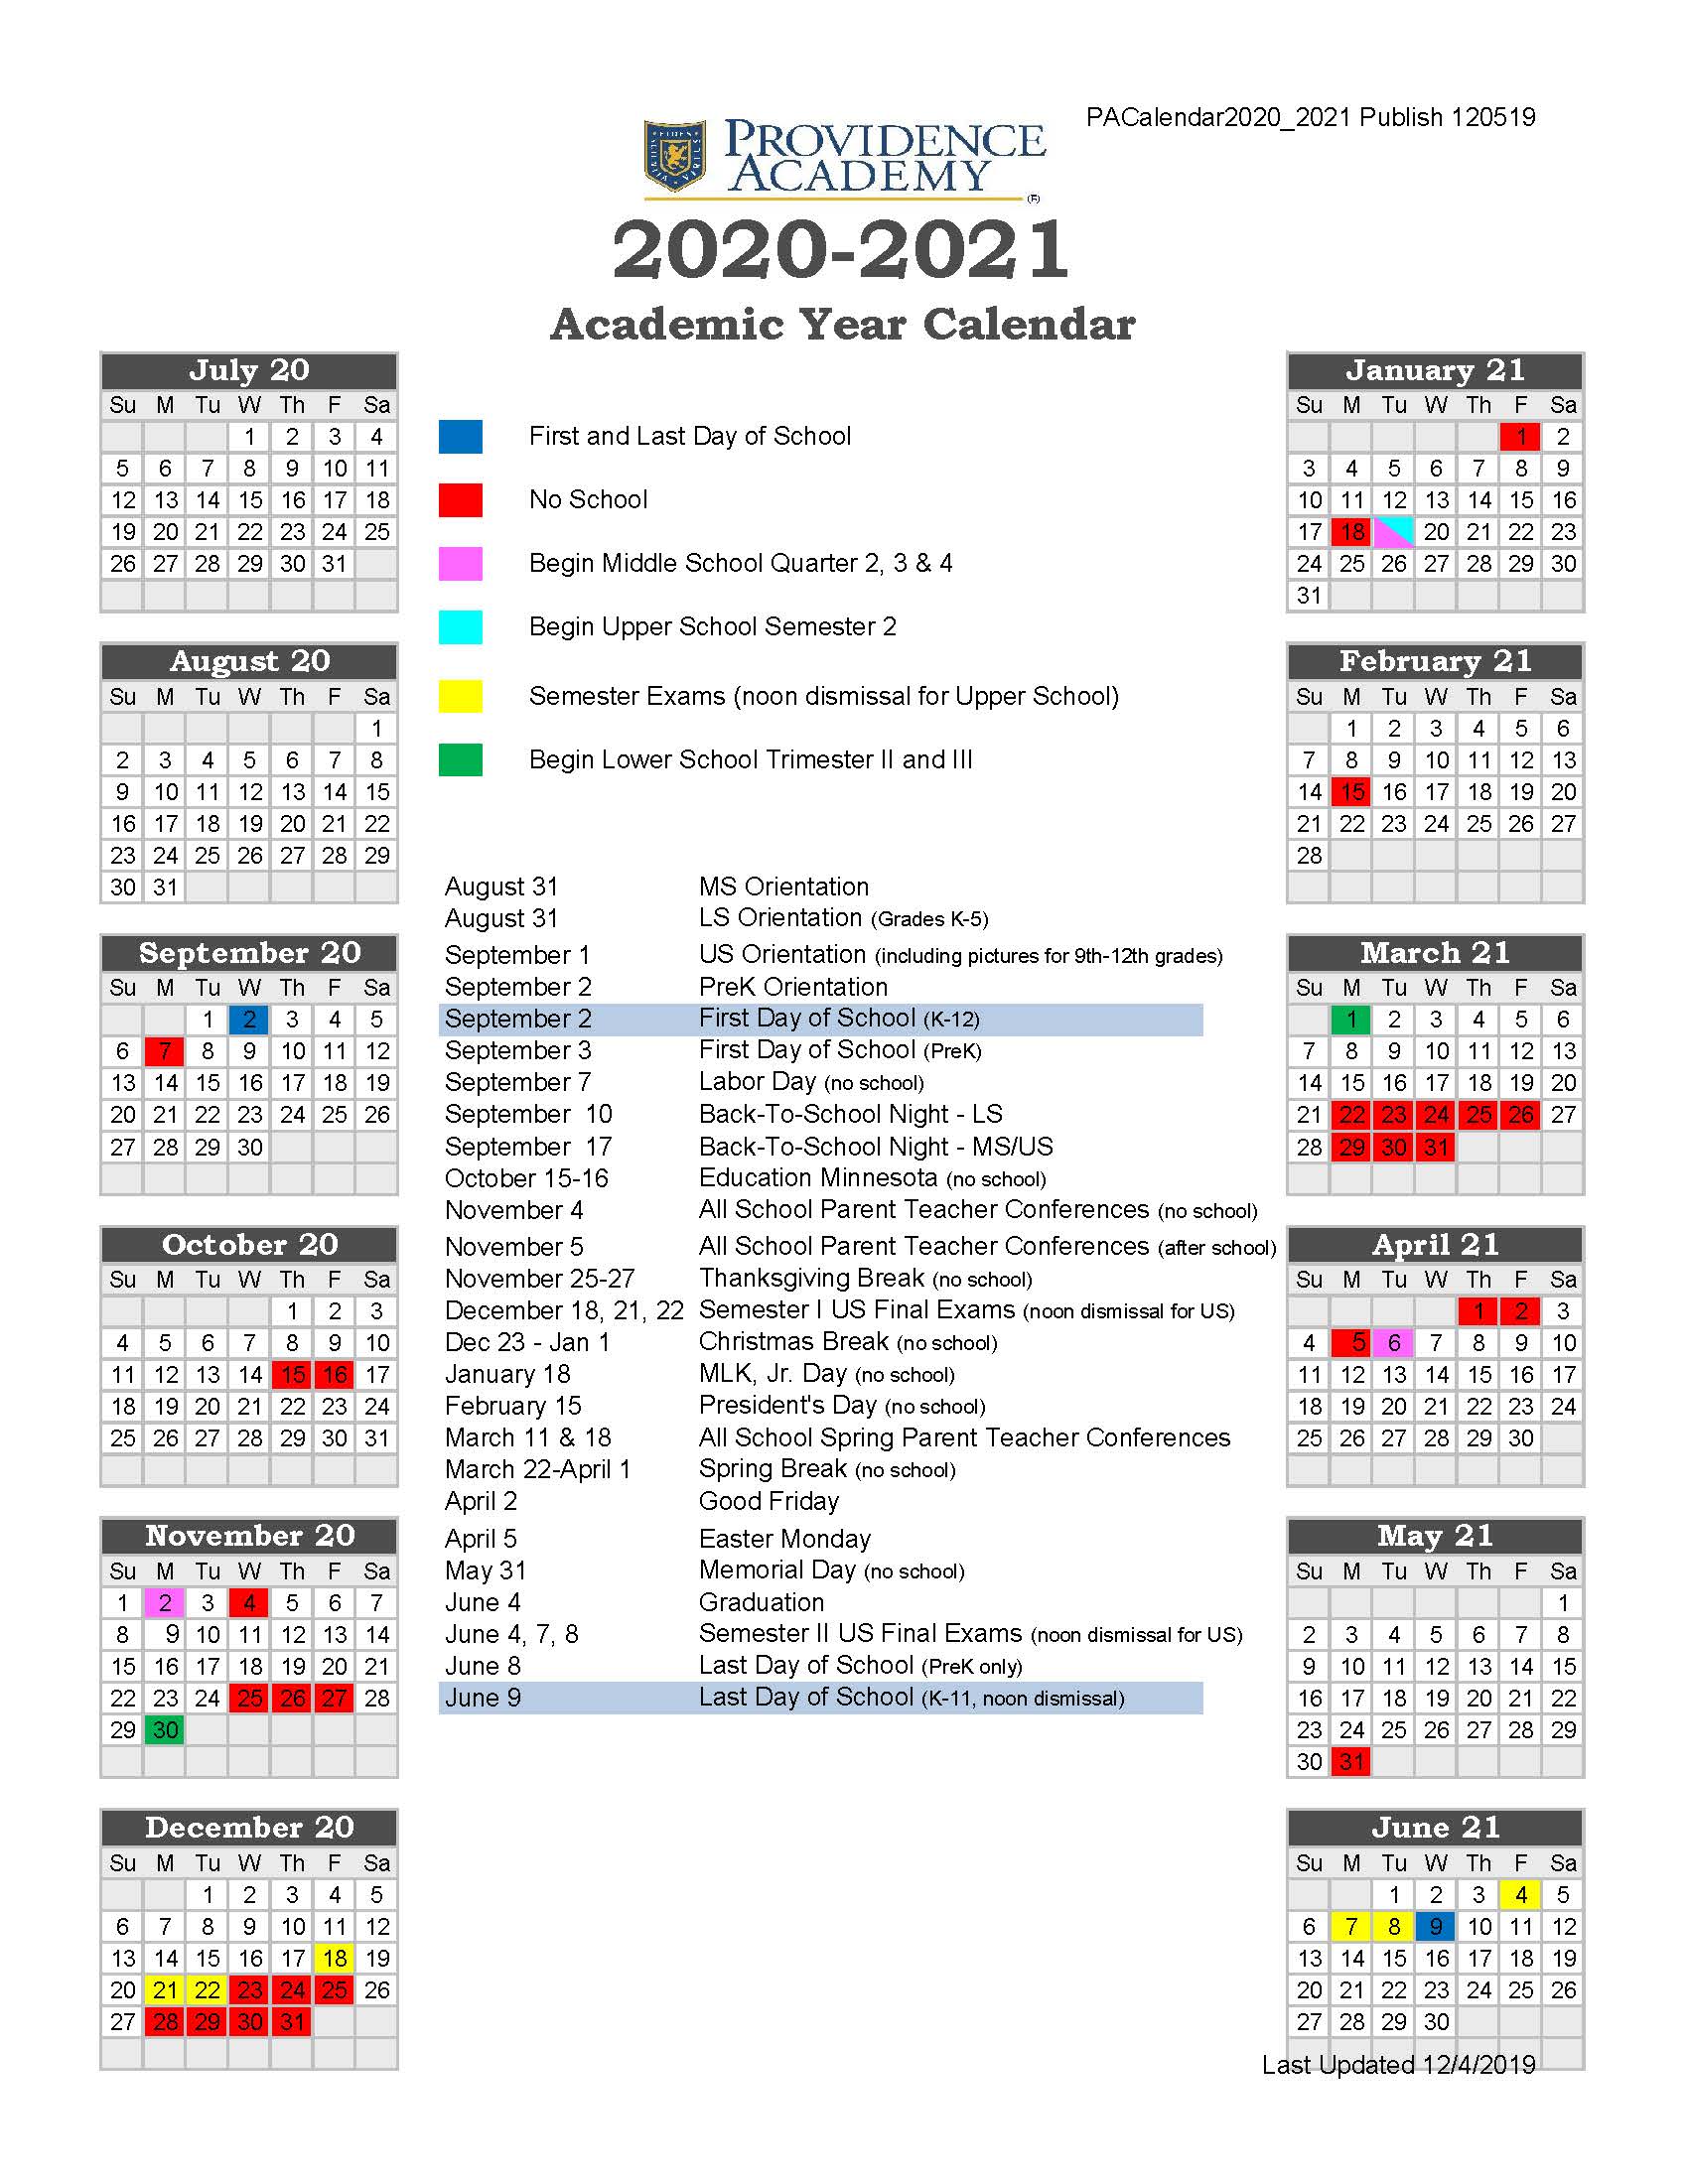 19 20 Providence Academy Academic Calendar 2020 2021 Providence Academy